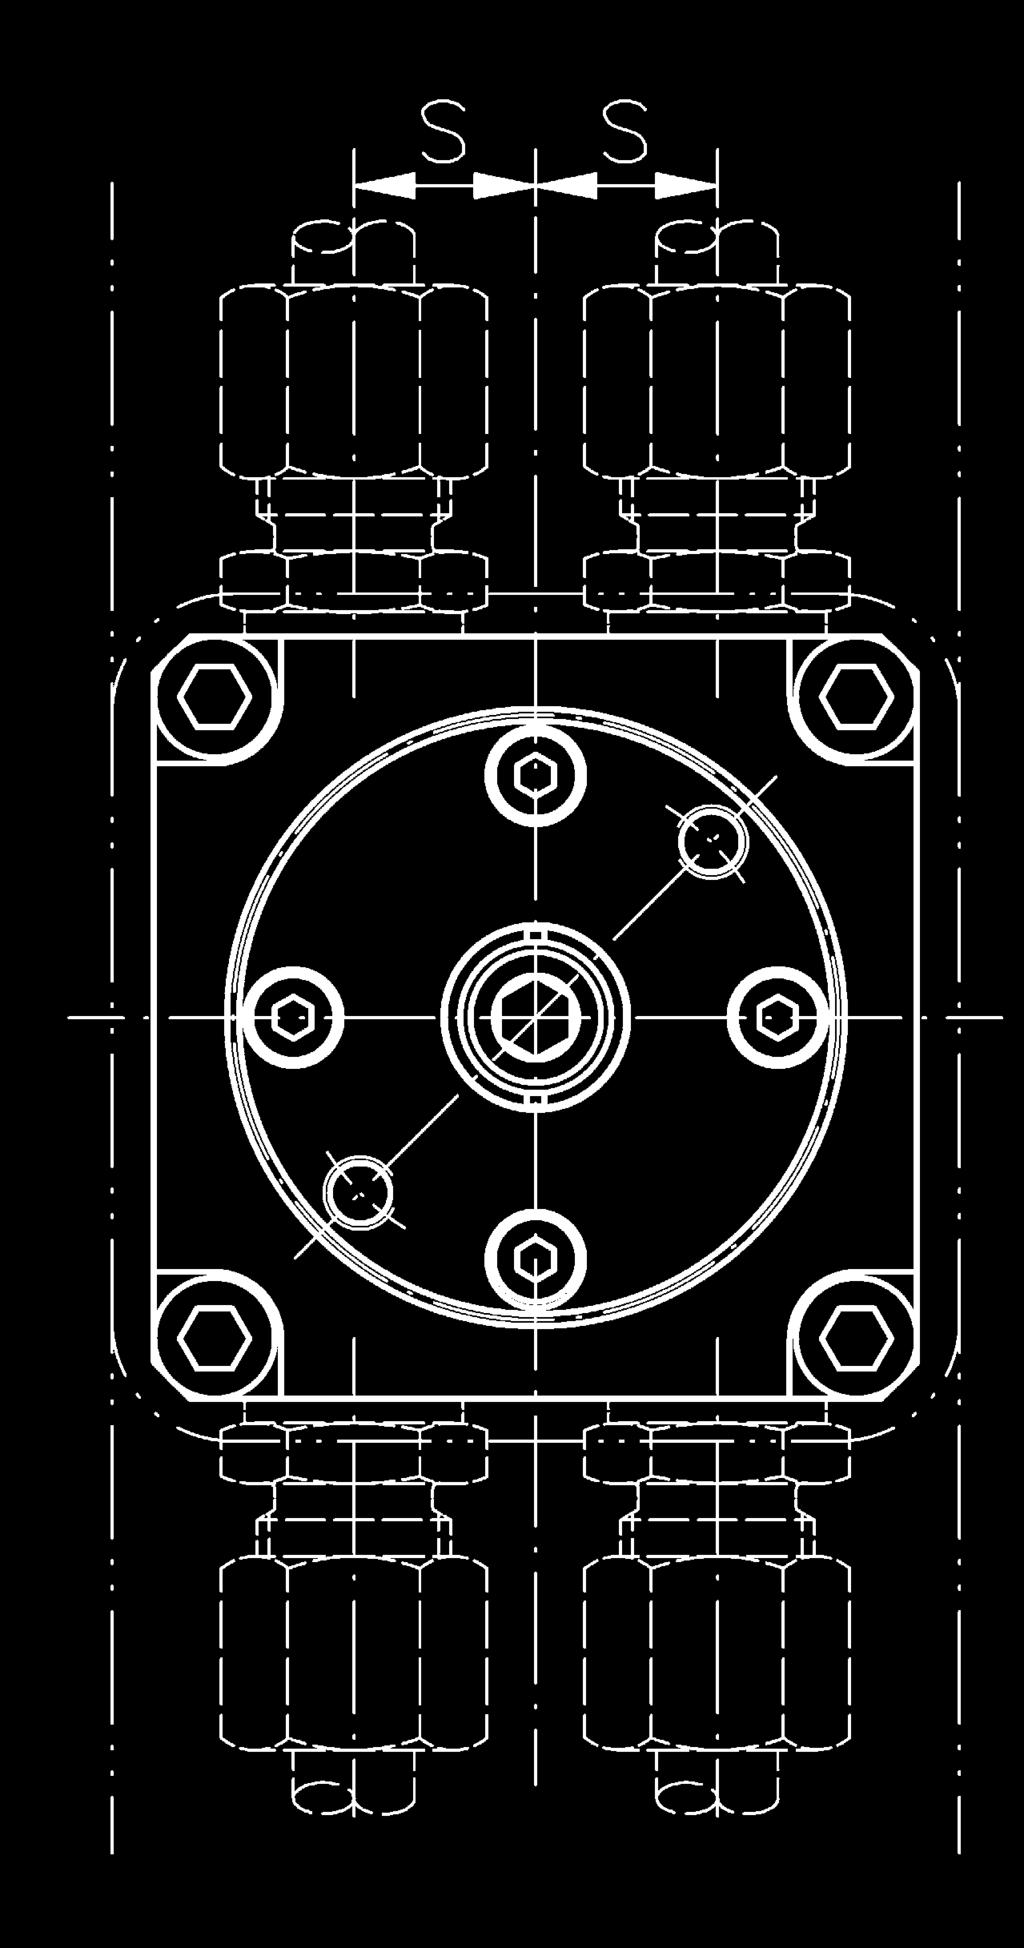 Valve Gate - Hydraulic Válvula de ompuerta Hidráulica Sistema Valvulado - Hidráulico F GOL øe FX T G